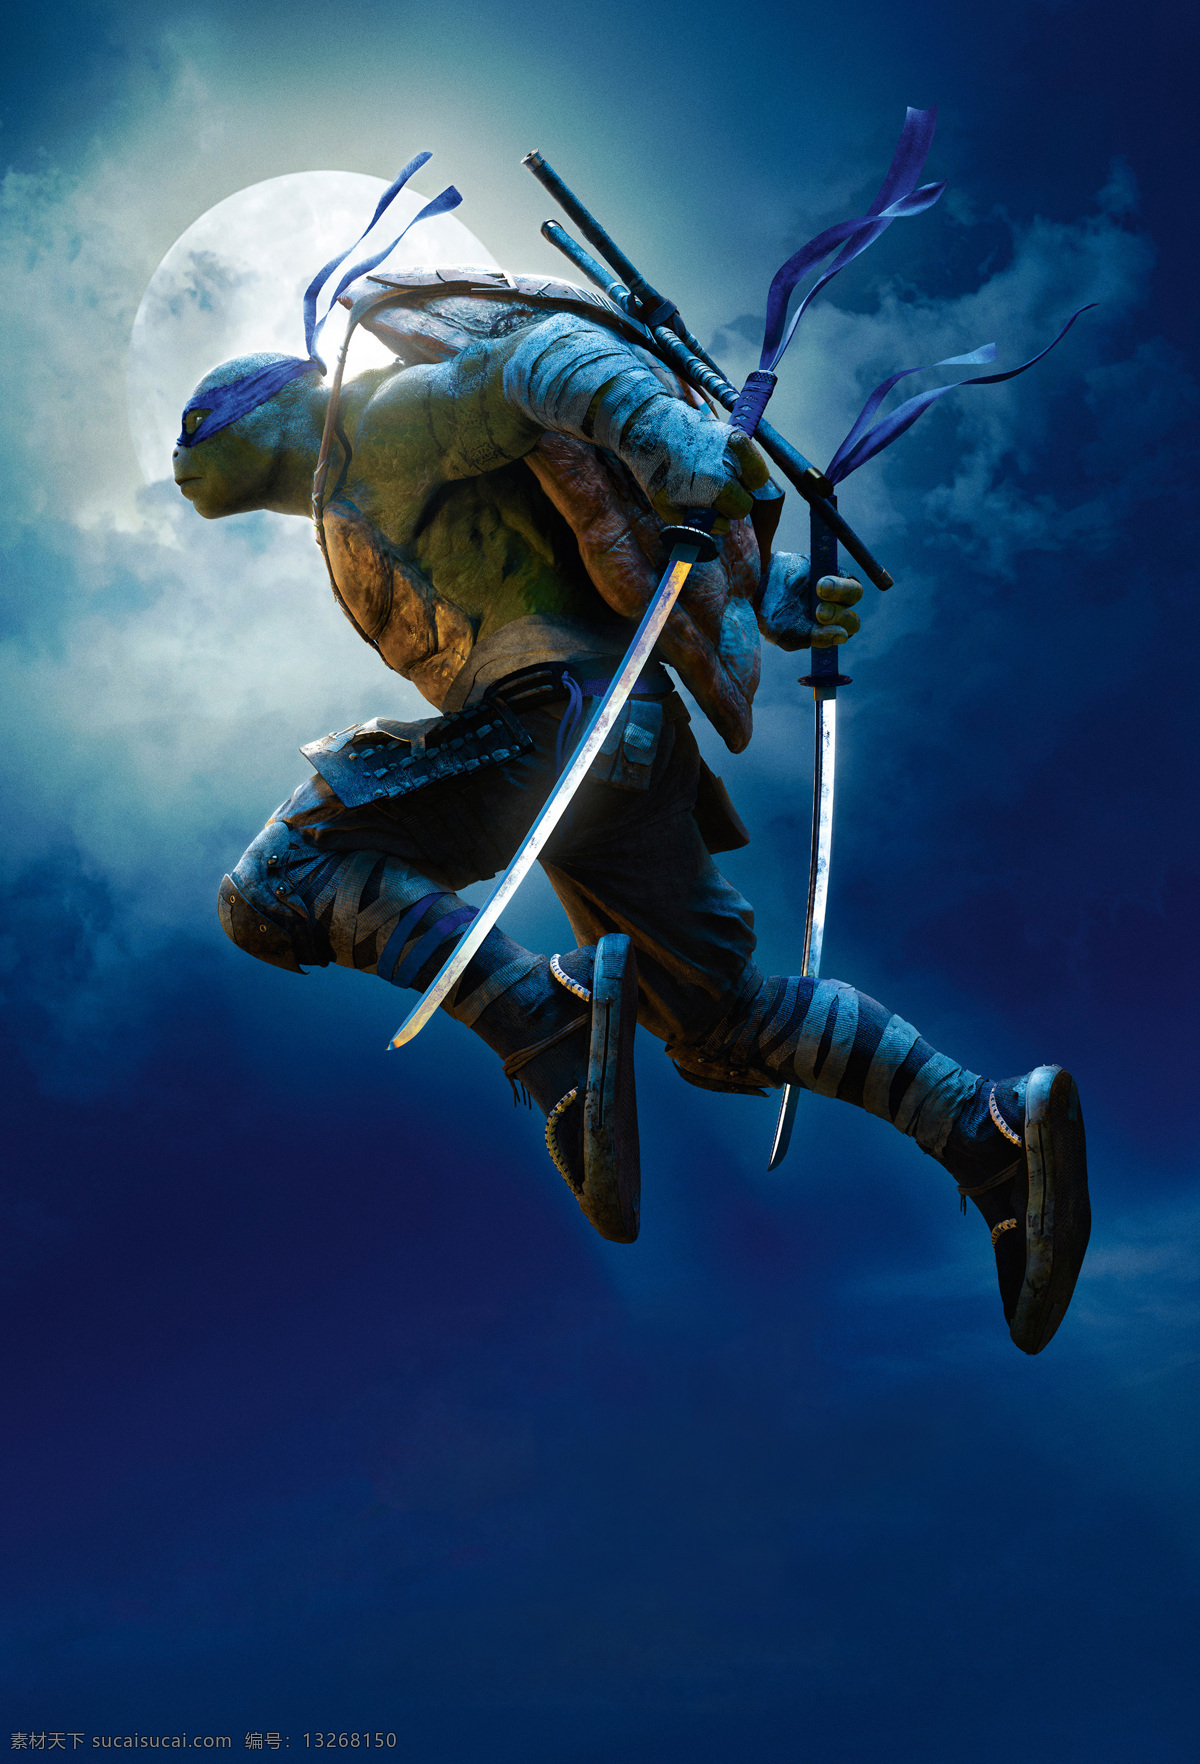 忍者神龟2 忍者神龟 忍者 忍者龟 破影而出 游戏 游戏电影 电影海报 电影海报素材